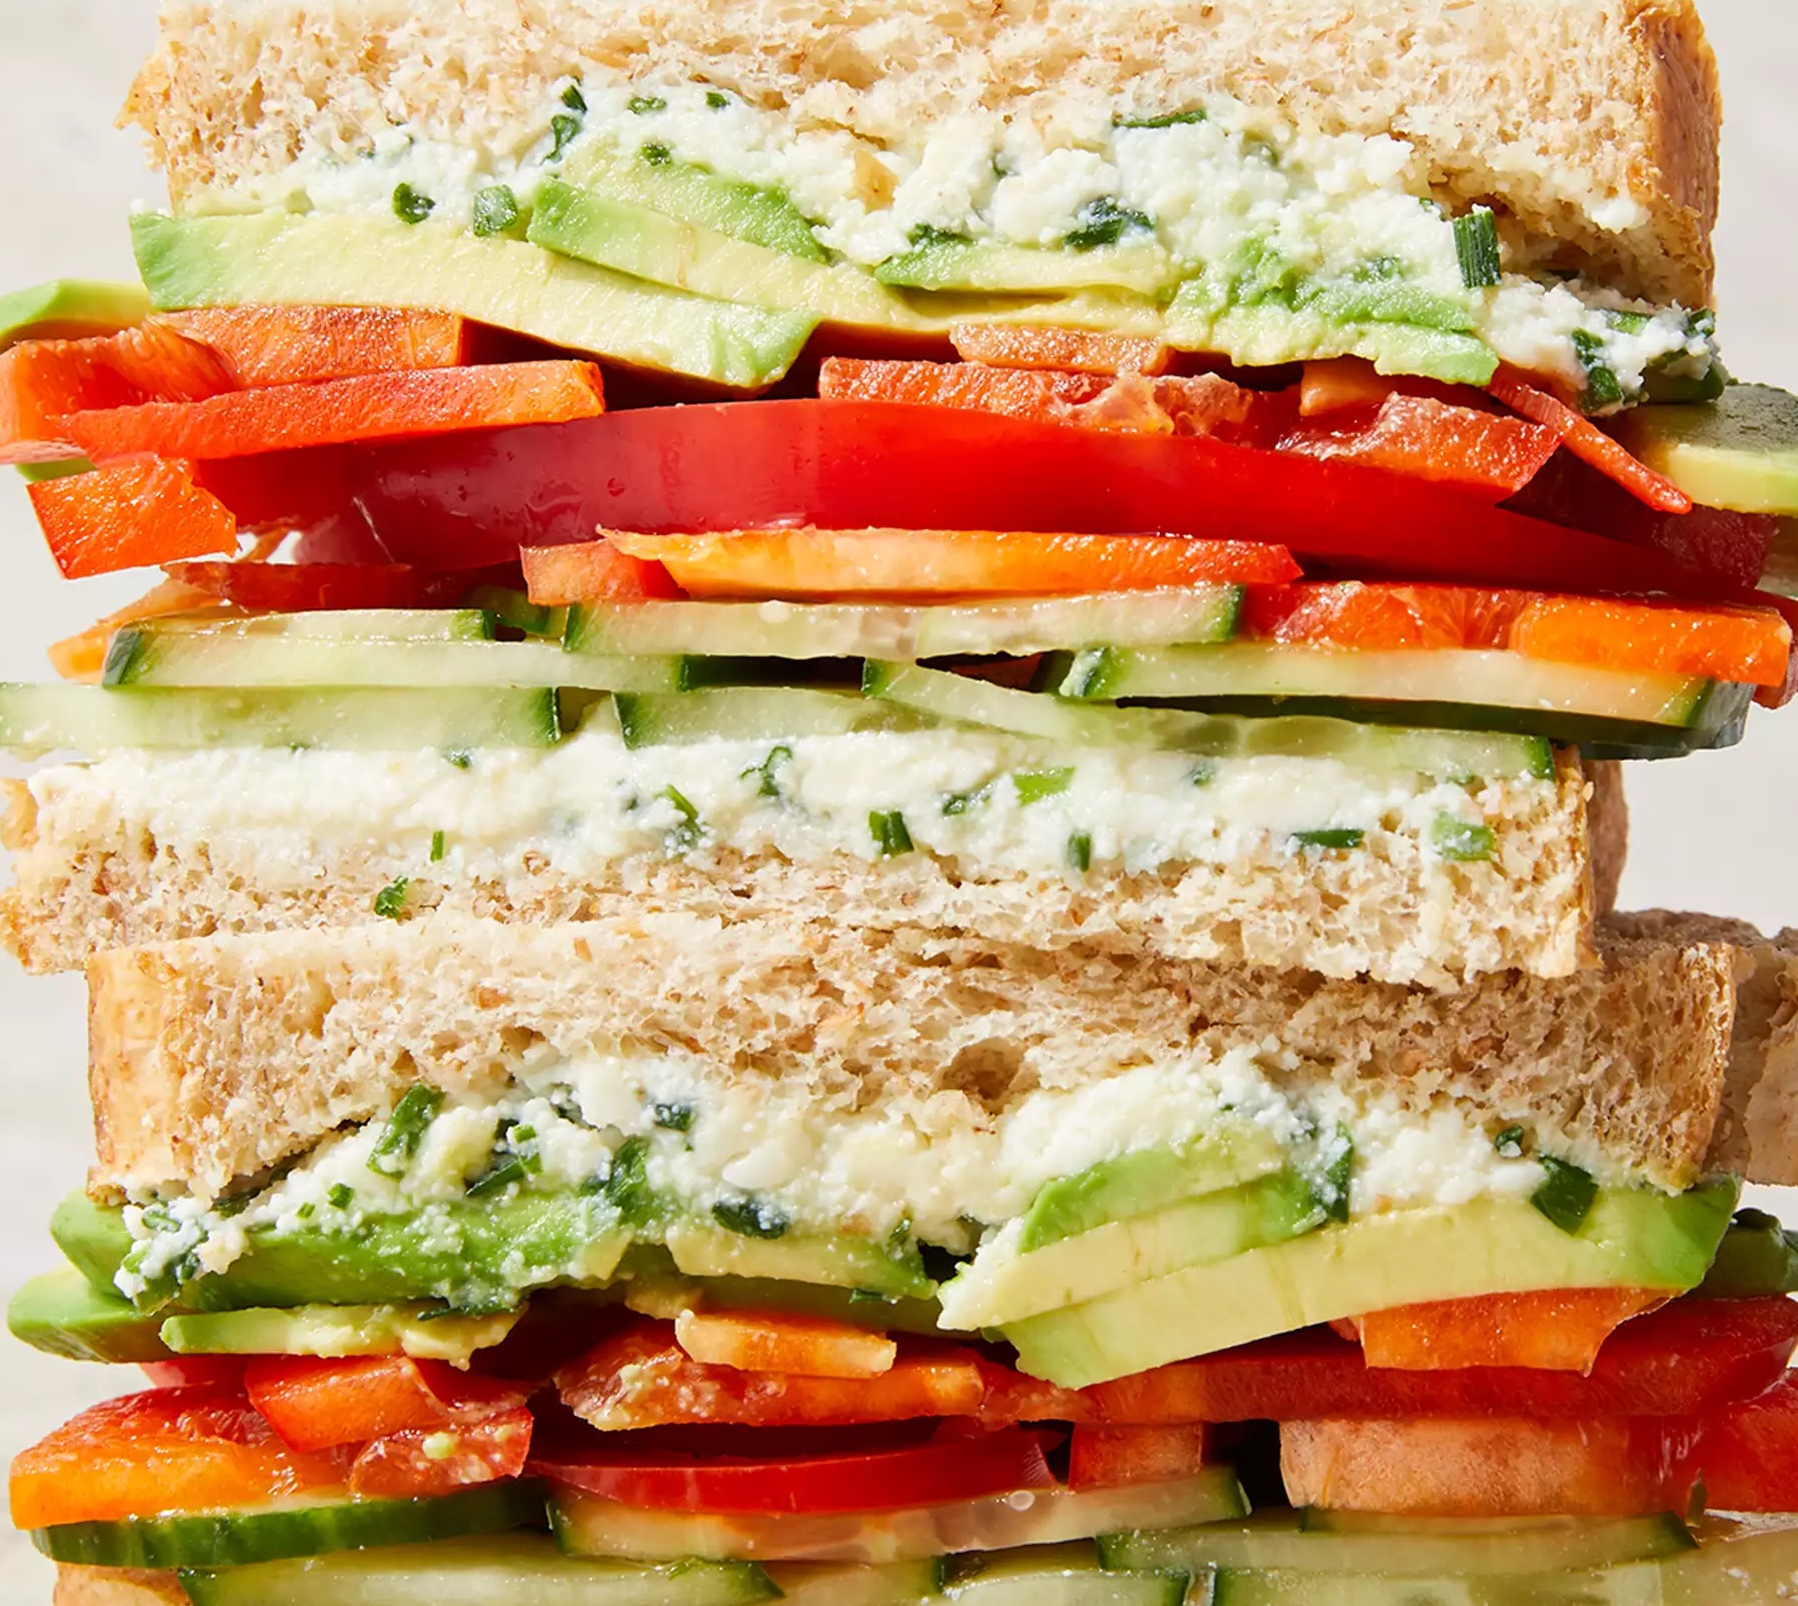 20 Ingredients That Will Ruin a Sandwich - Eww Gallery | eBaum's World